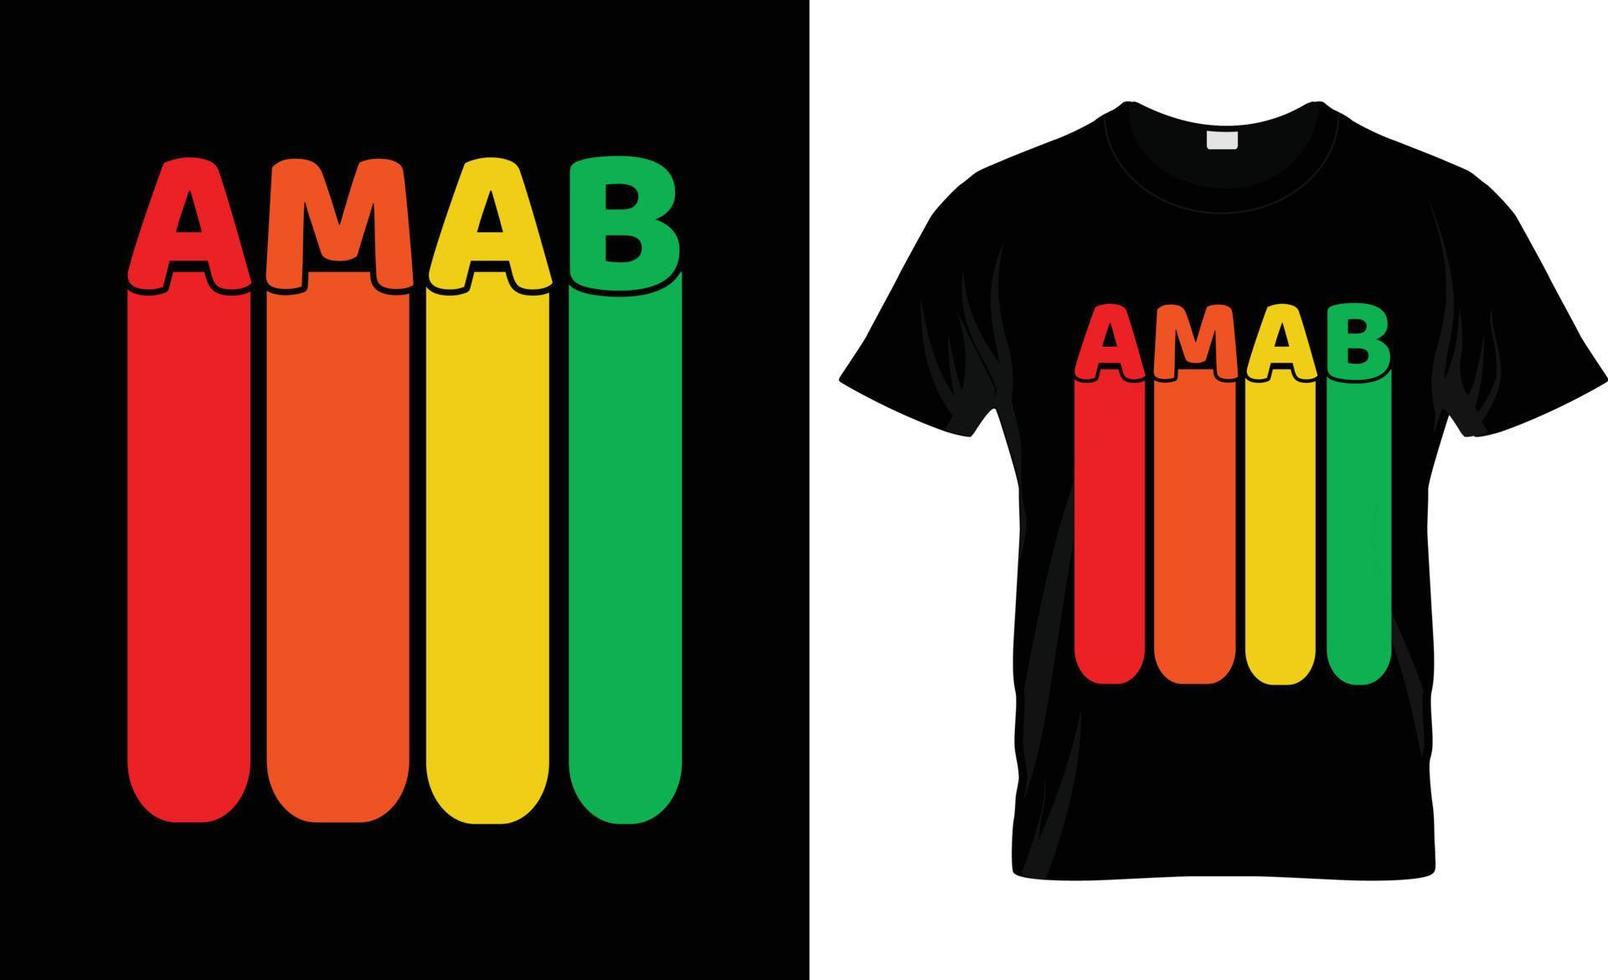 conception de t-shirt payé par gay, slogan de t-shirt payé par gay et conception de vêtements, typographie payée par gay, vecteur payé par gay, illustration payée par gay